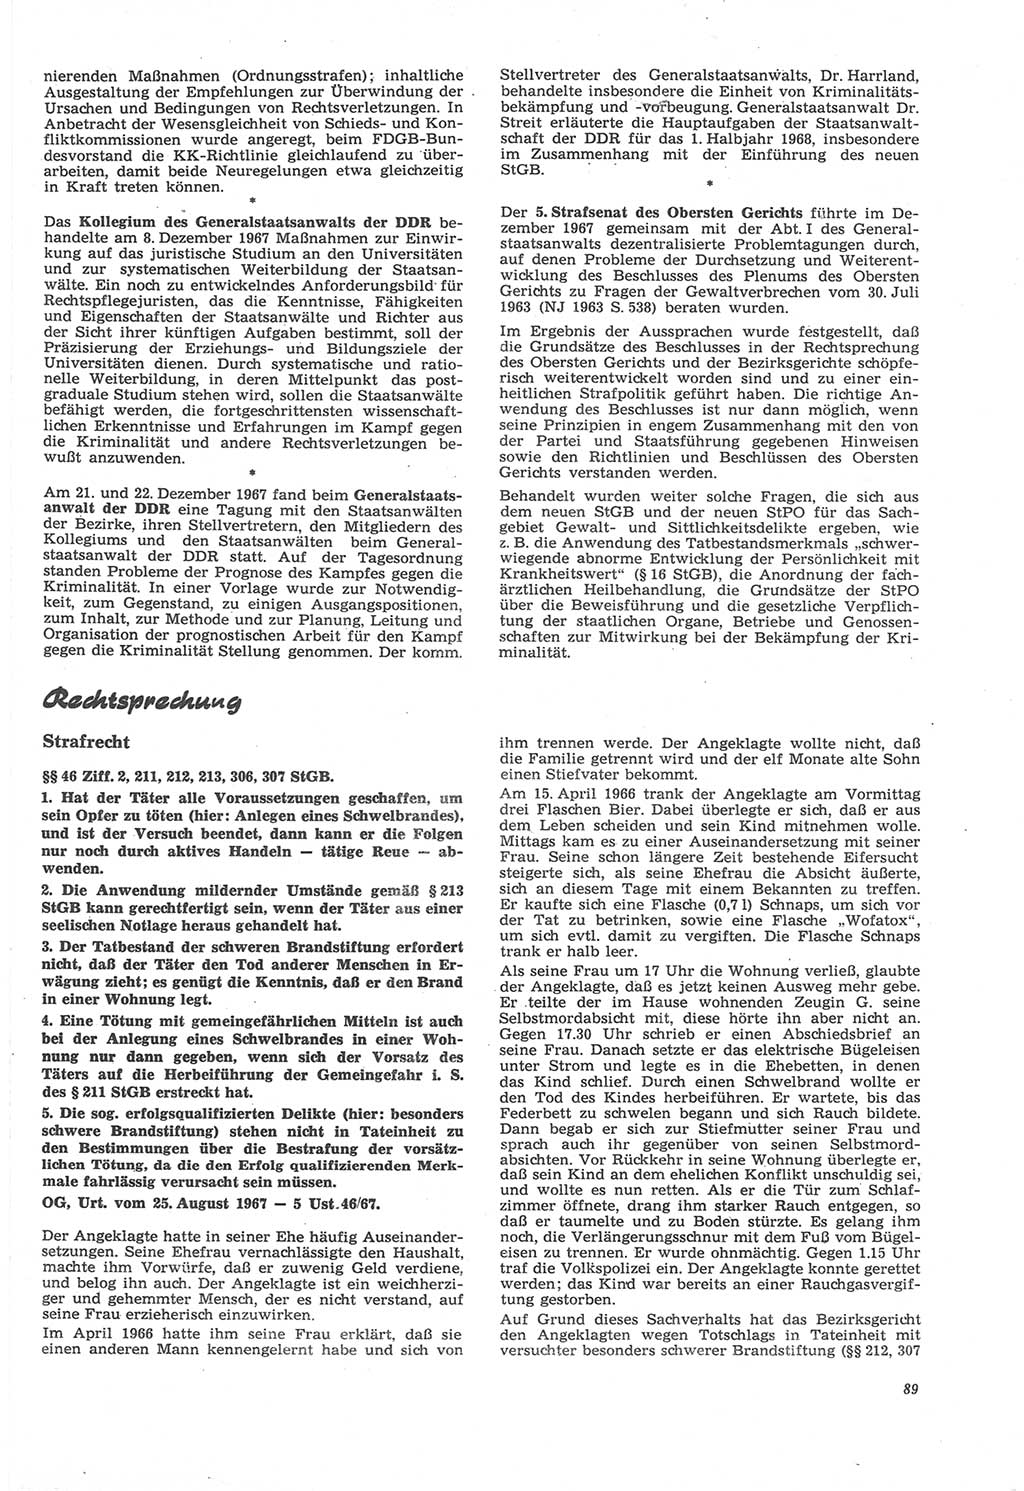 Neue Justiz (NJ), Zeitschrift für Recht und Rechtswissenschaft [Deutsche Demokratische Republik (DDR)], 22. Jahrgang 1968, Seite 89 (NJ DDR 1968, S. 89)